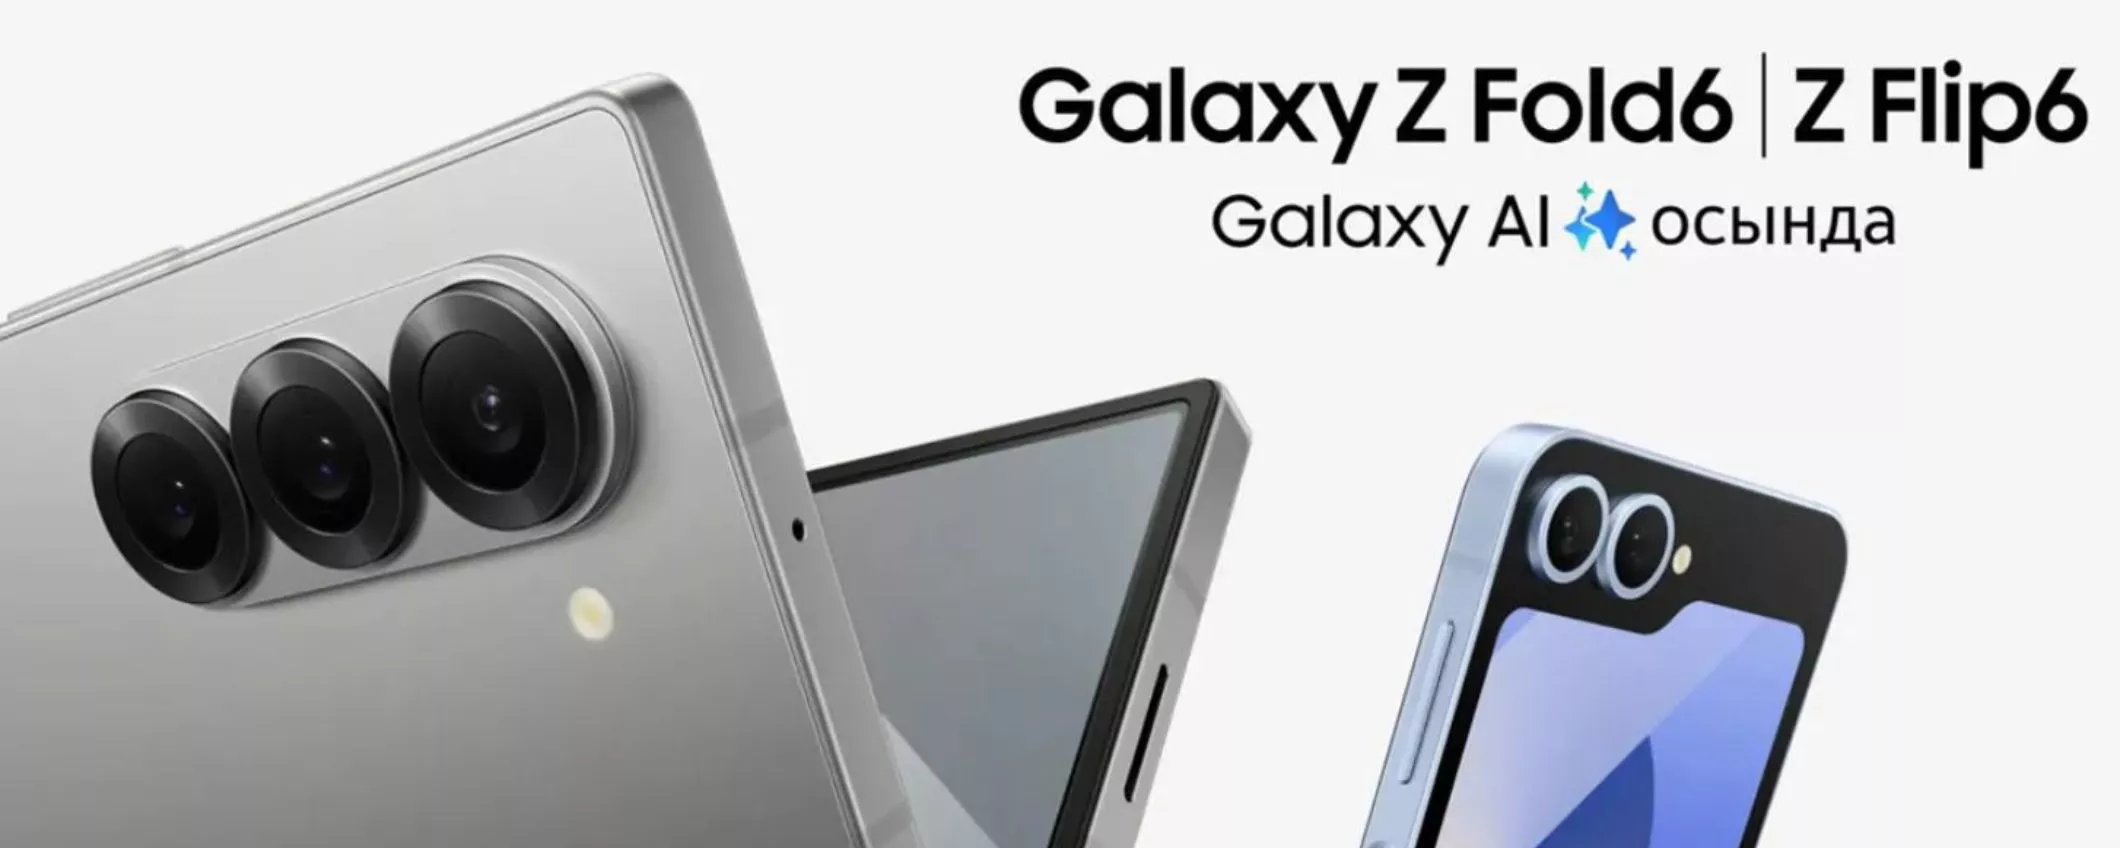 Galaxy Z Flip6 e Galaxy Z Fold6: il prezzo non è quello giusto! Grosso aumento in vista?